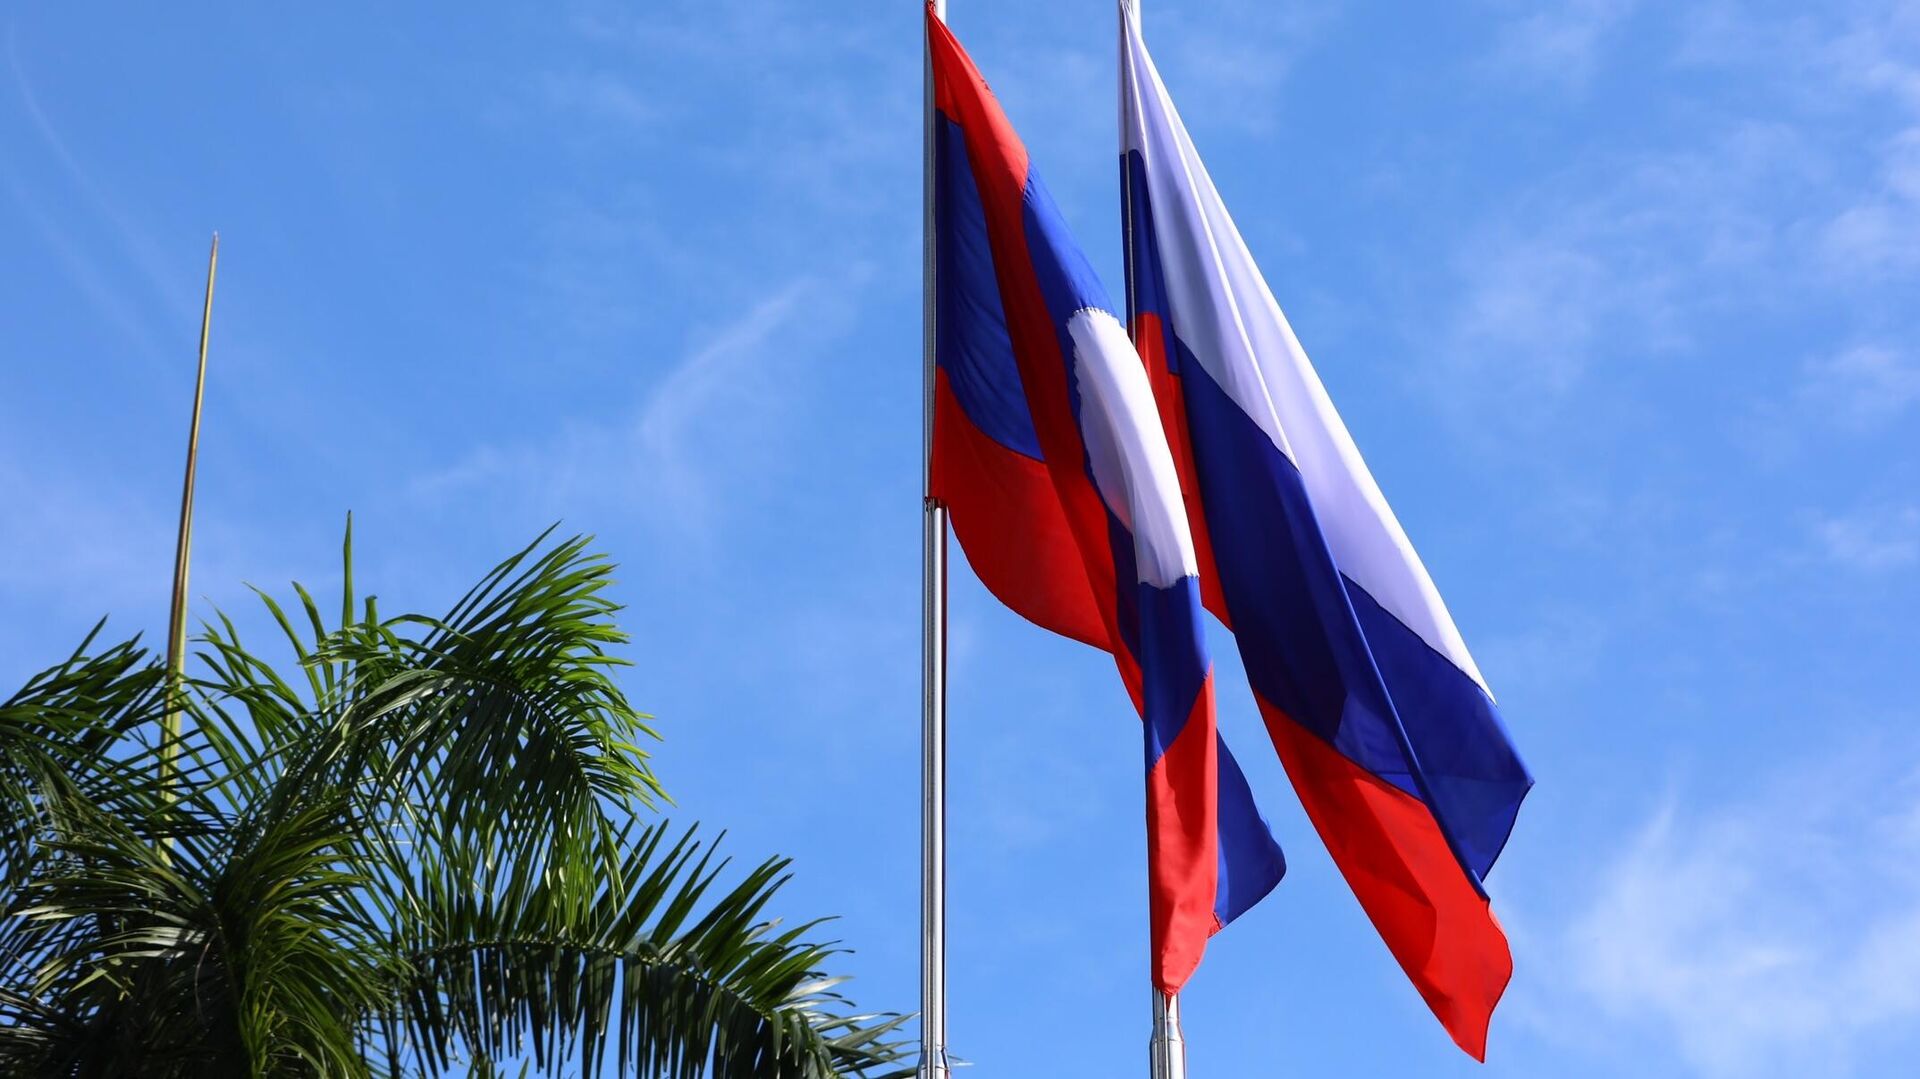 Государственные флаги Российской Федерации и Лаоса1